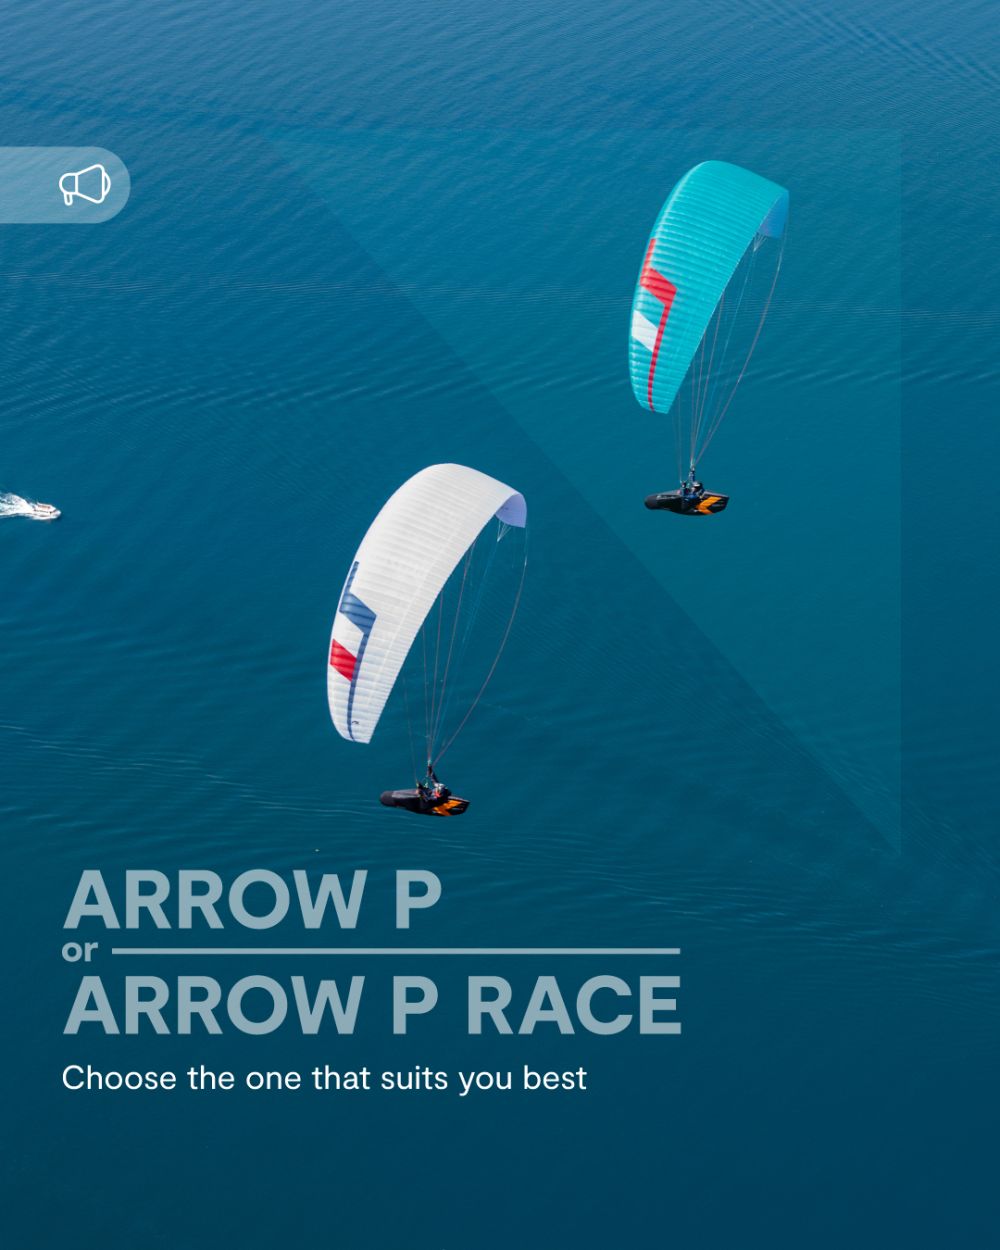 Arrow P vs Arrow P Race. Which one suits you best?